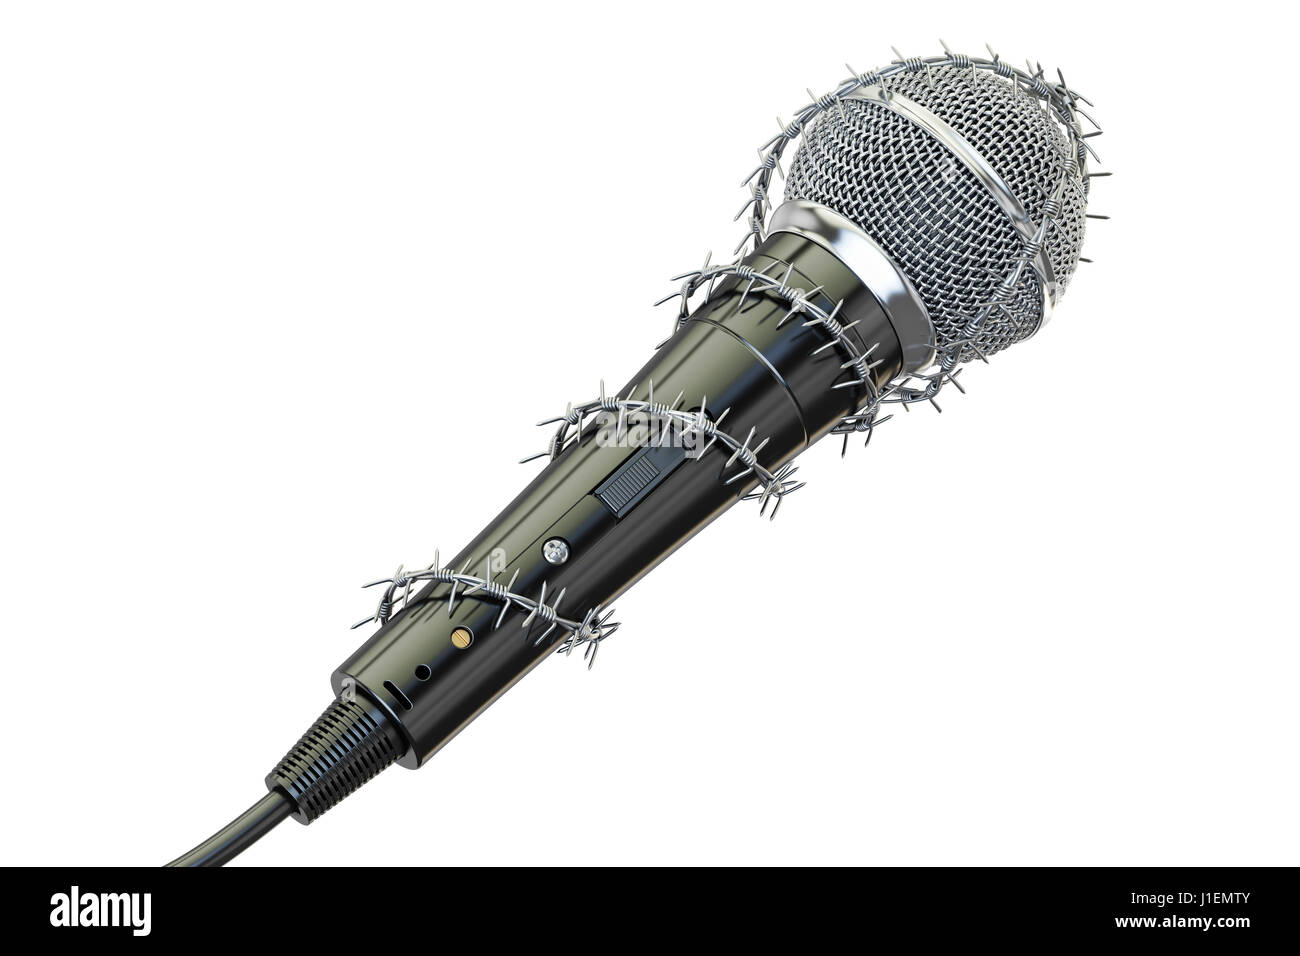 Freiheit der Rede und der Presse Verbot Konzept. Mikrofon mit Stacheldraht,  3D rendering Stockfotografie - Alamy